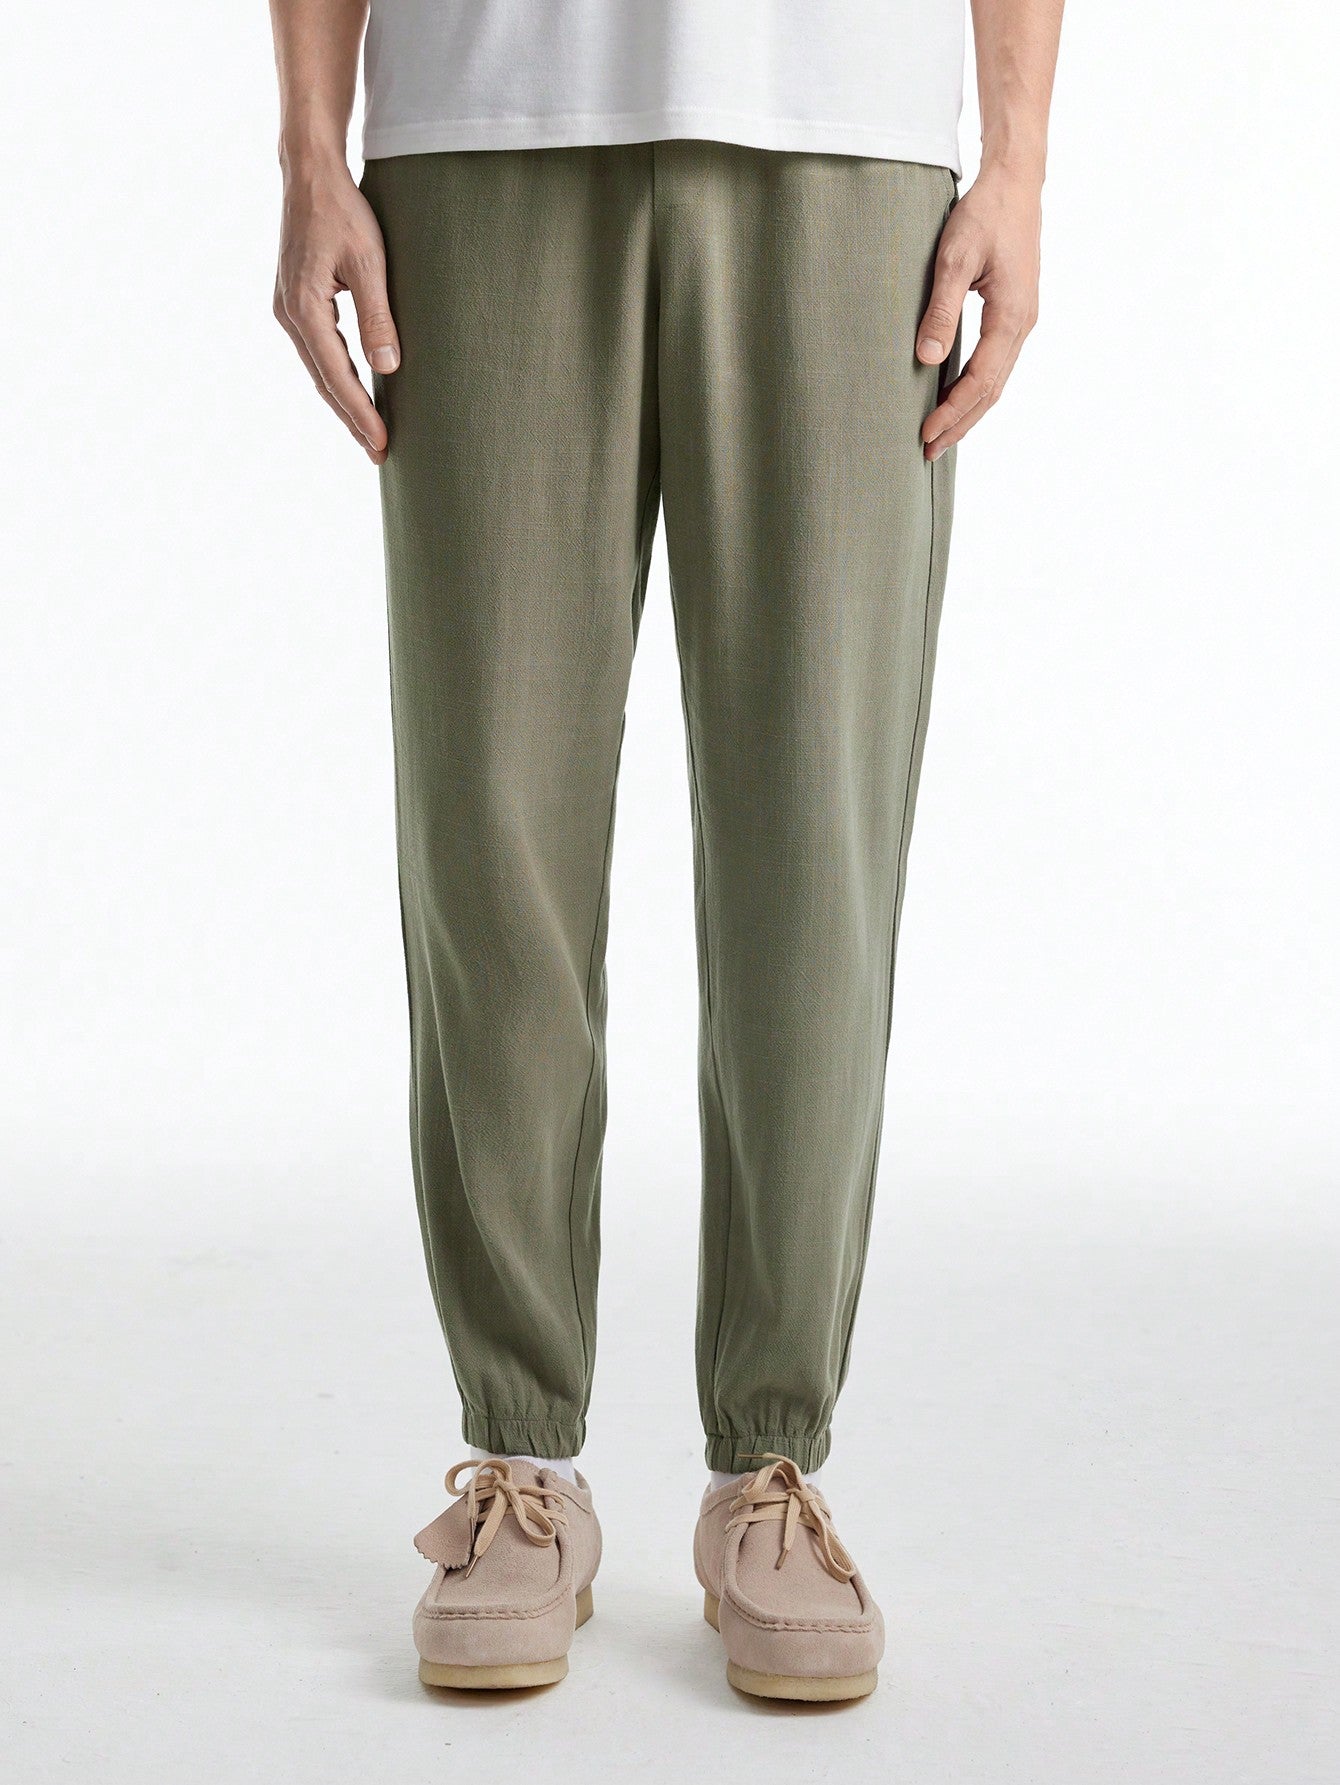 Men's Solid Color Elastic Cuff Woven Casual Pants